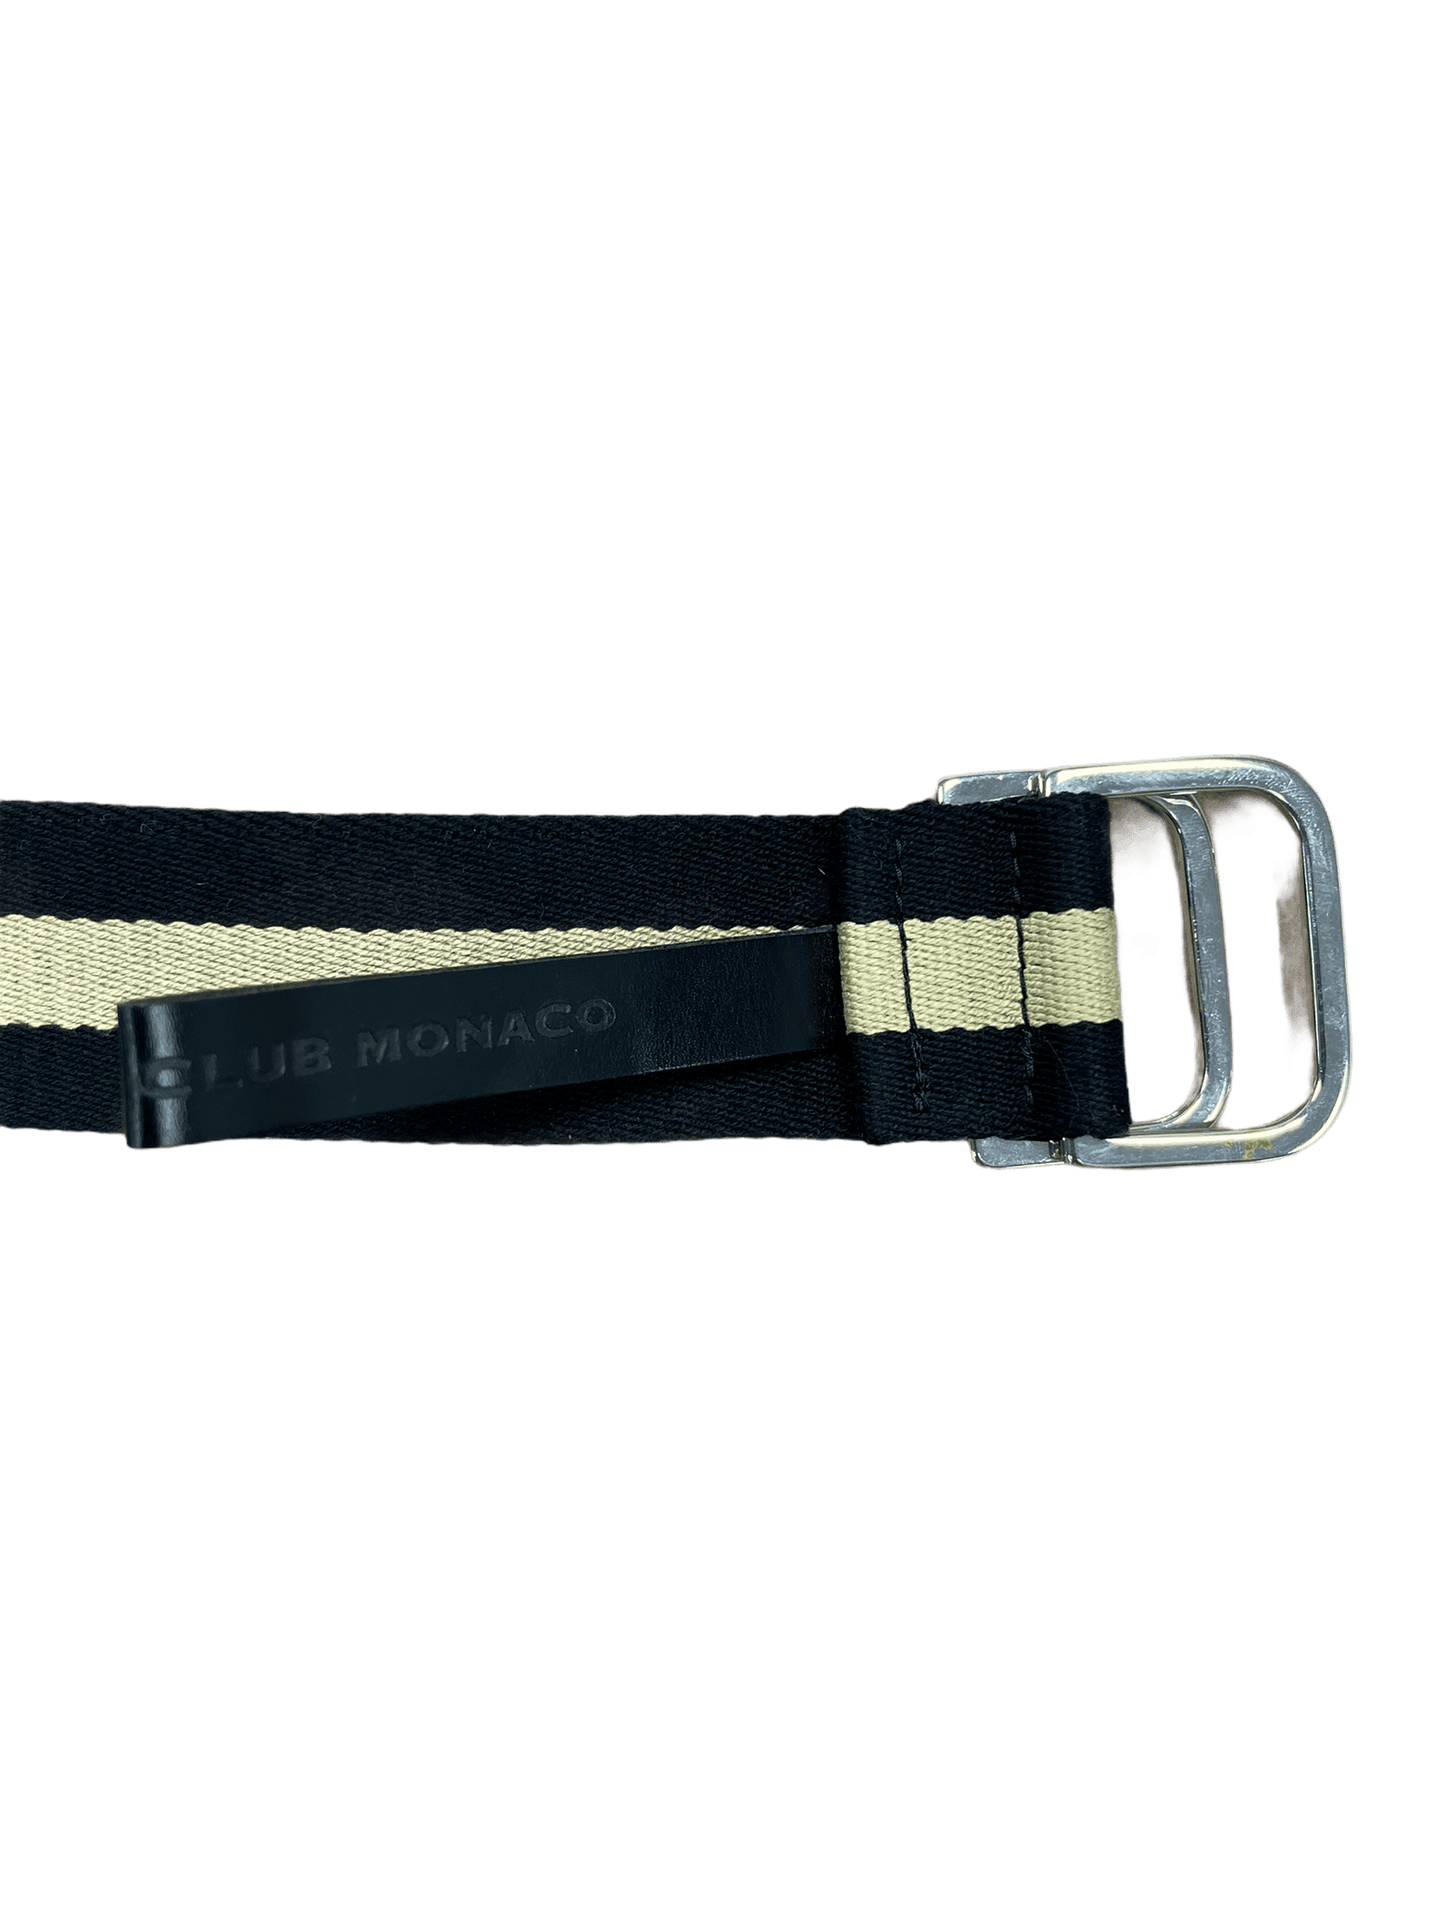 Club Monaco Black & Cream Striped Canvas Belt Small—Genuine Design luxury consignment 